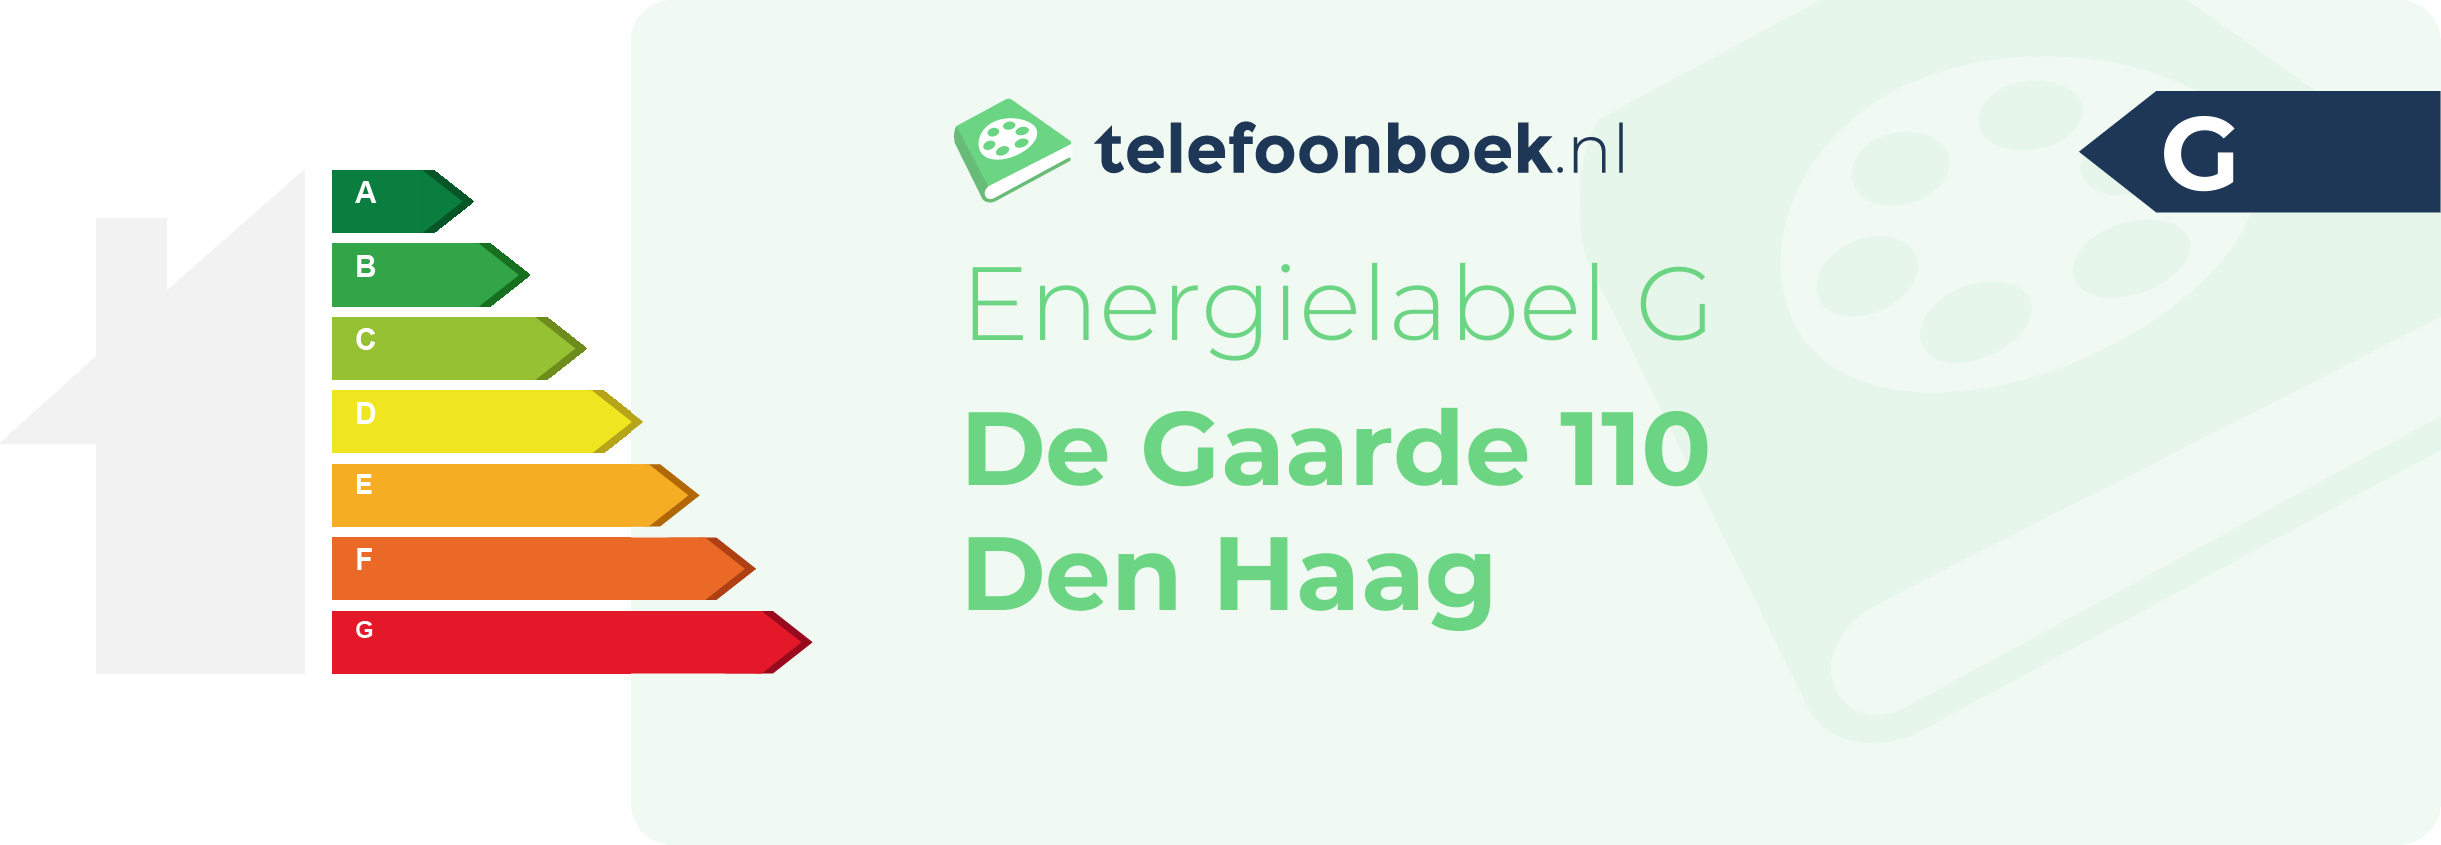 Energielabel De Gaarde 110 Den Haag